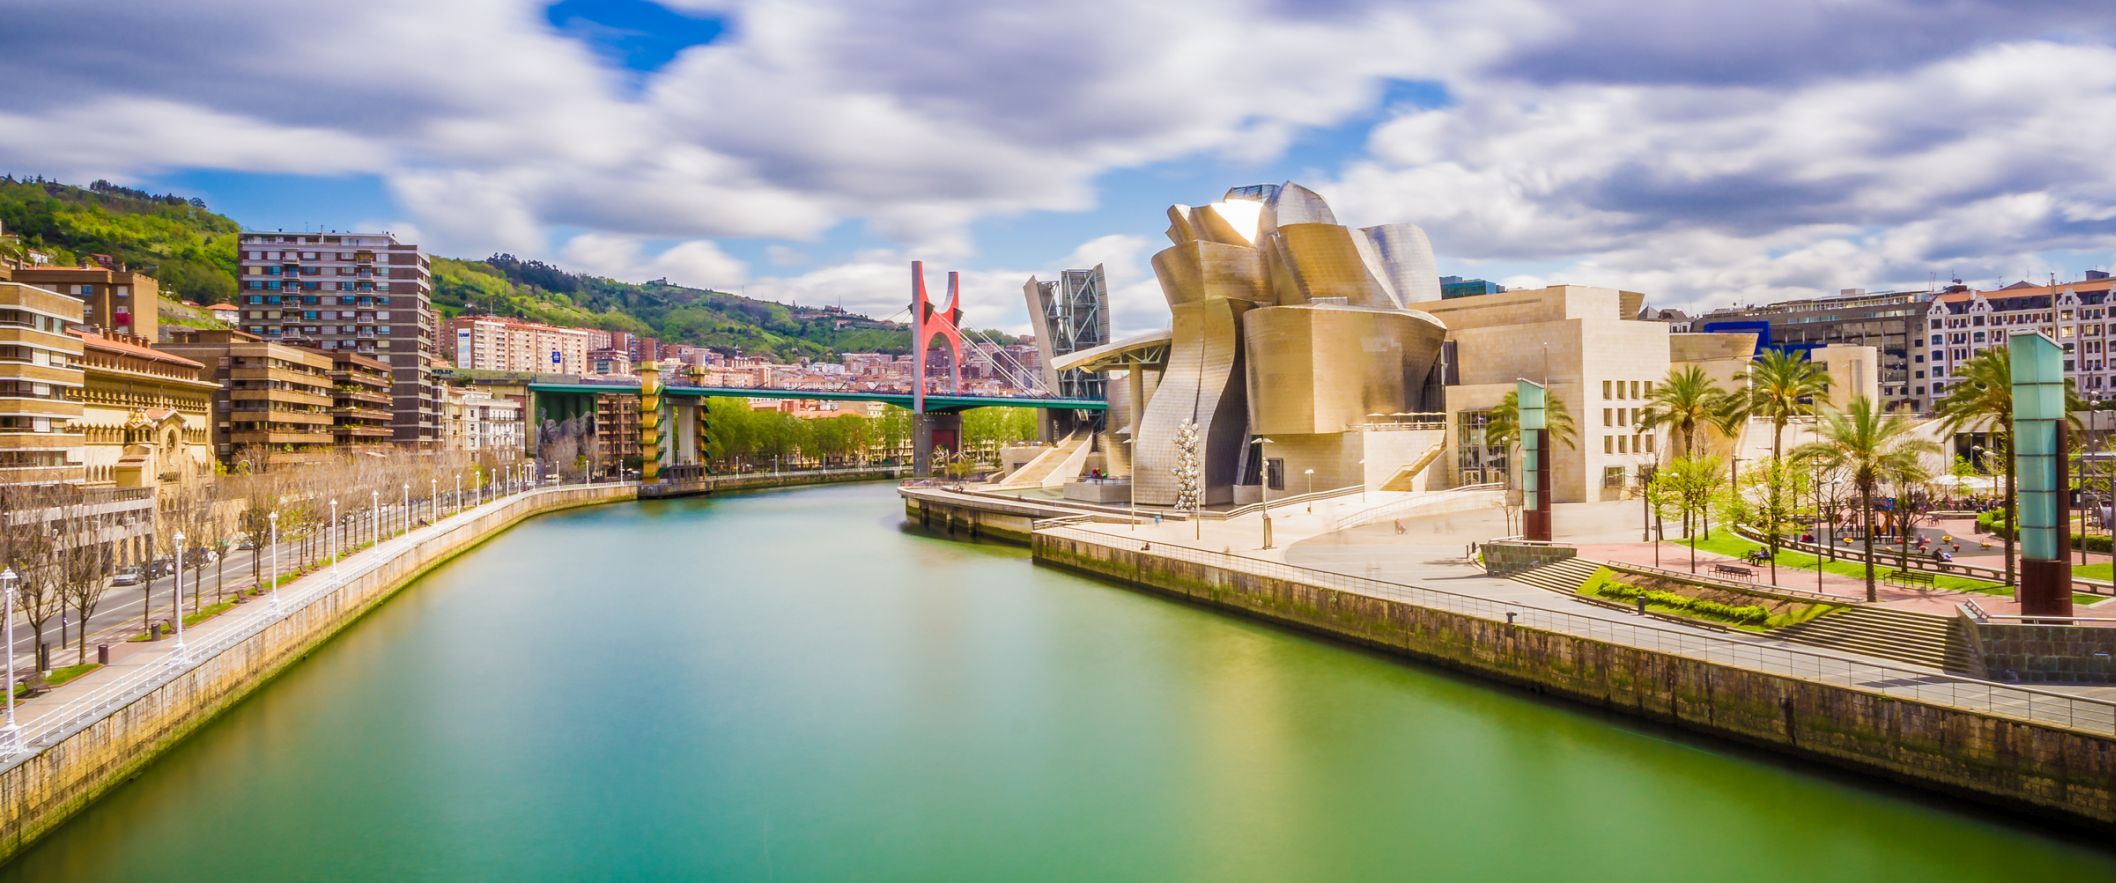  Bilbao.jpg 